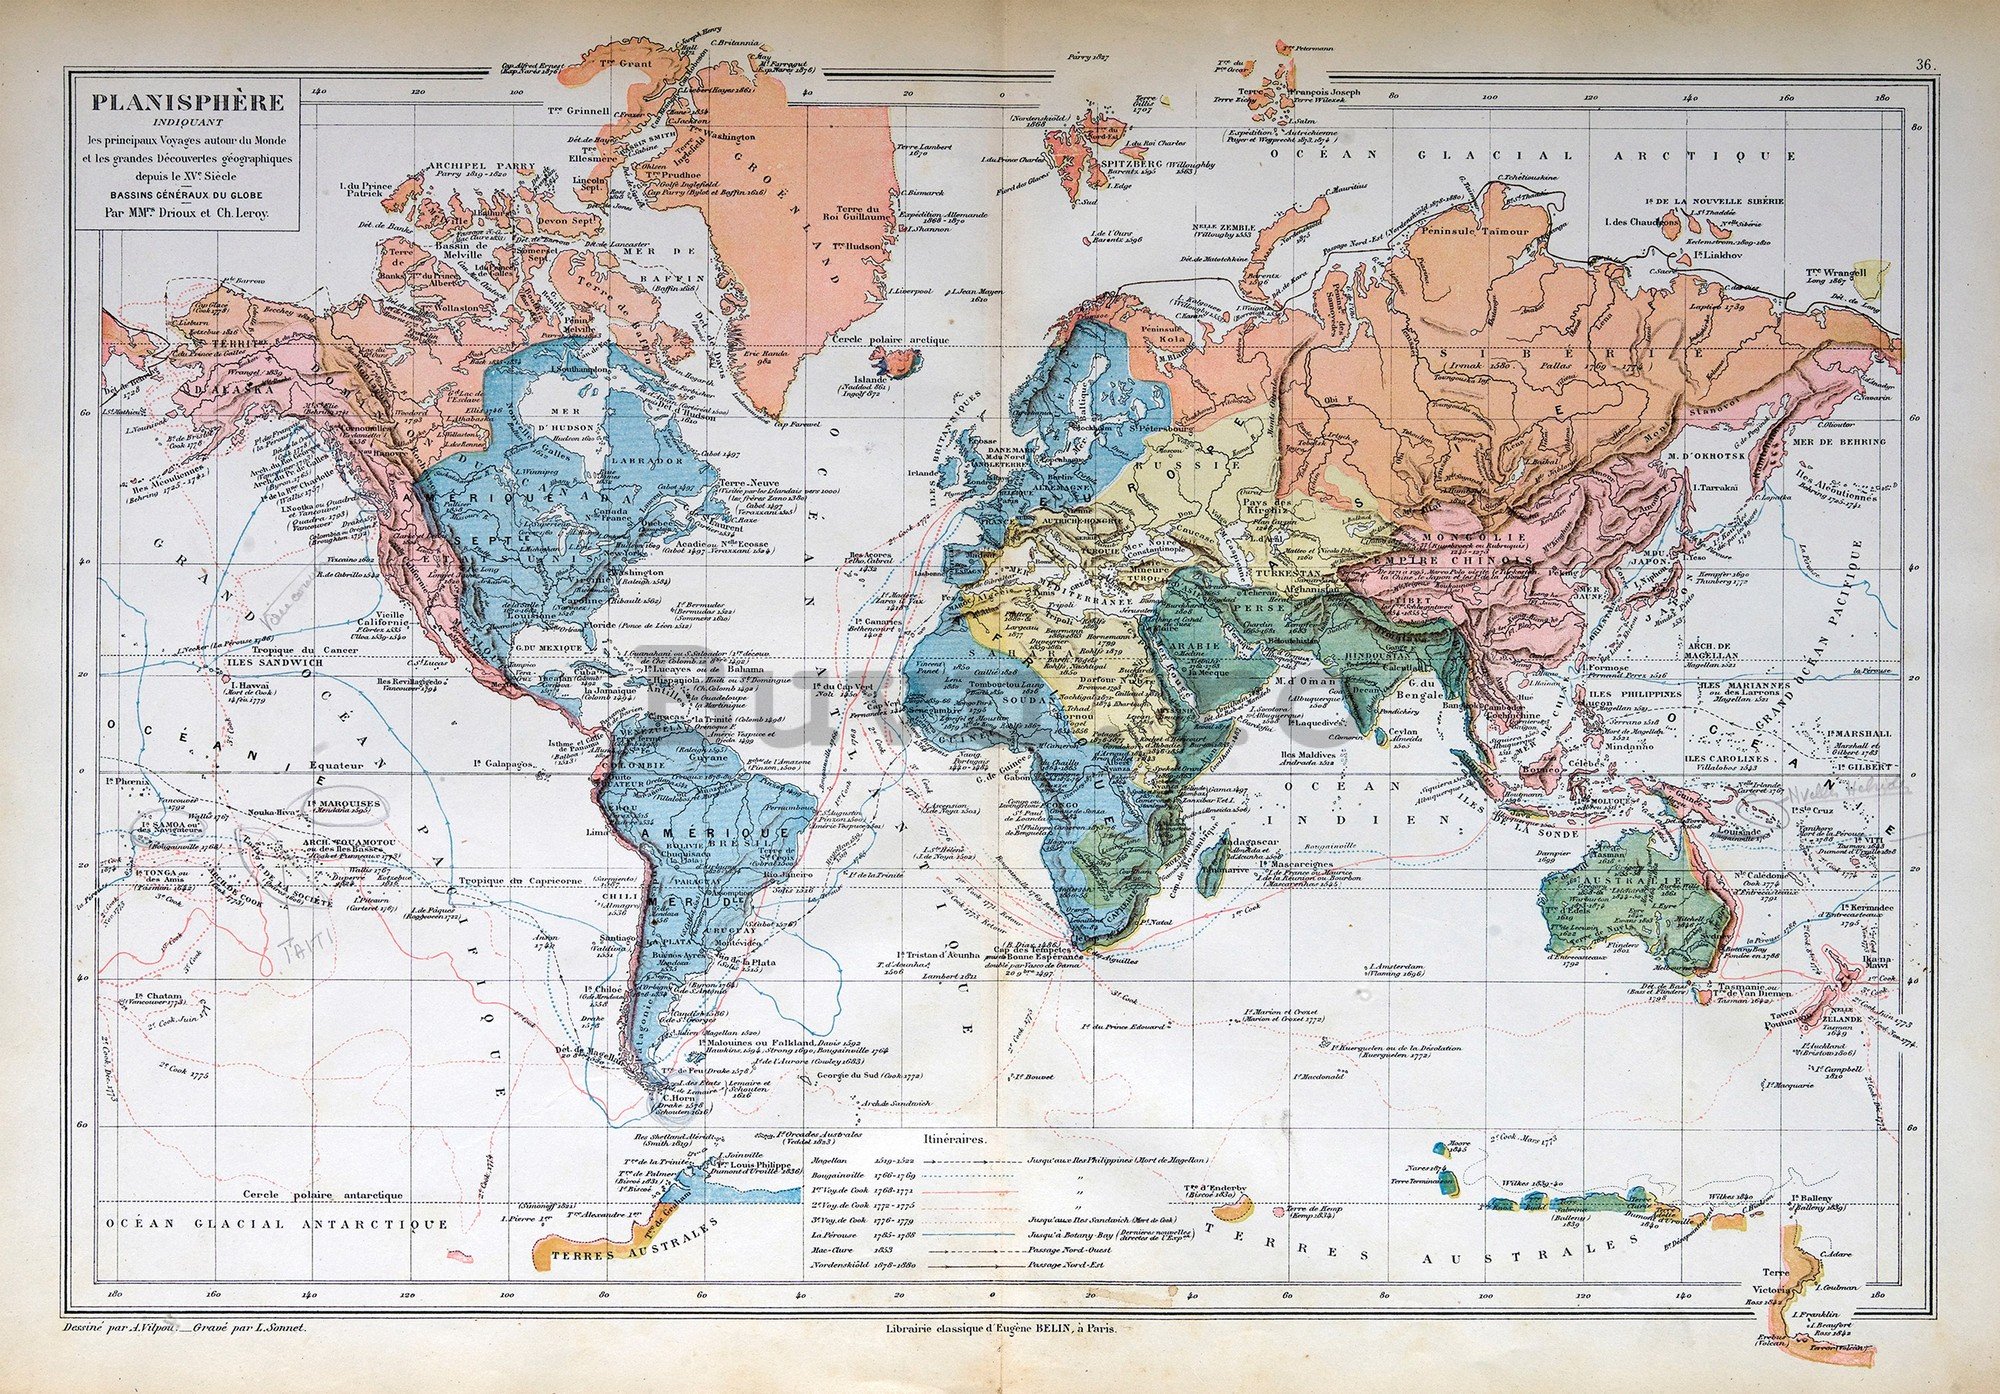 Fototapet vlies: Harta lumii franceză (Vintage) - 254x184 cm